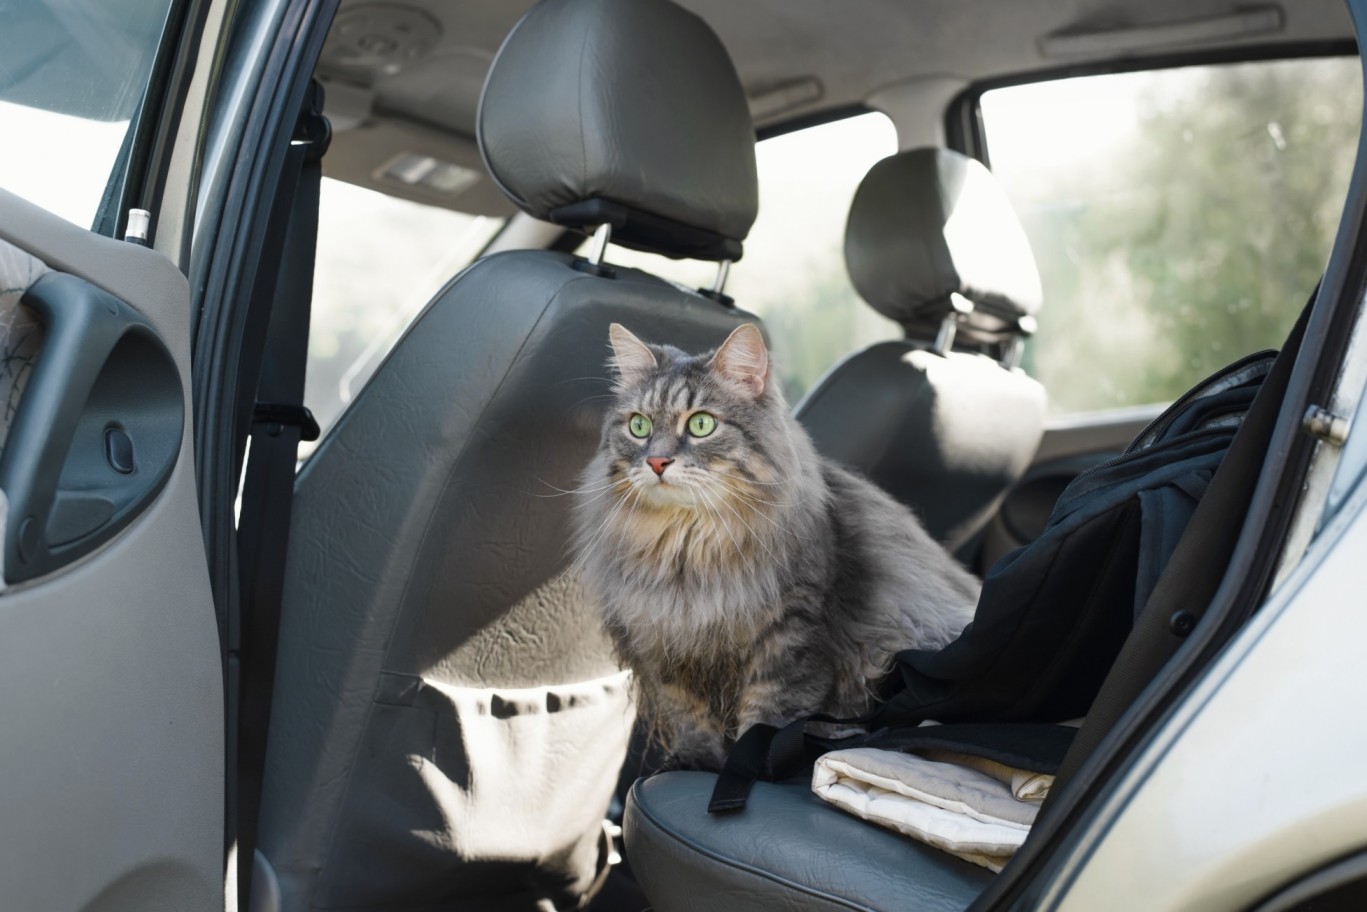 A cat sitting by an open car door